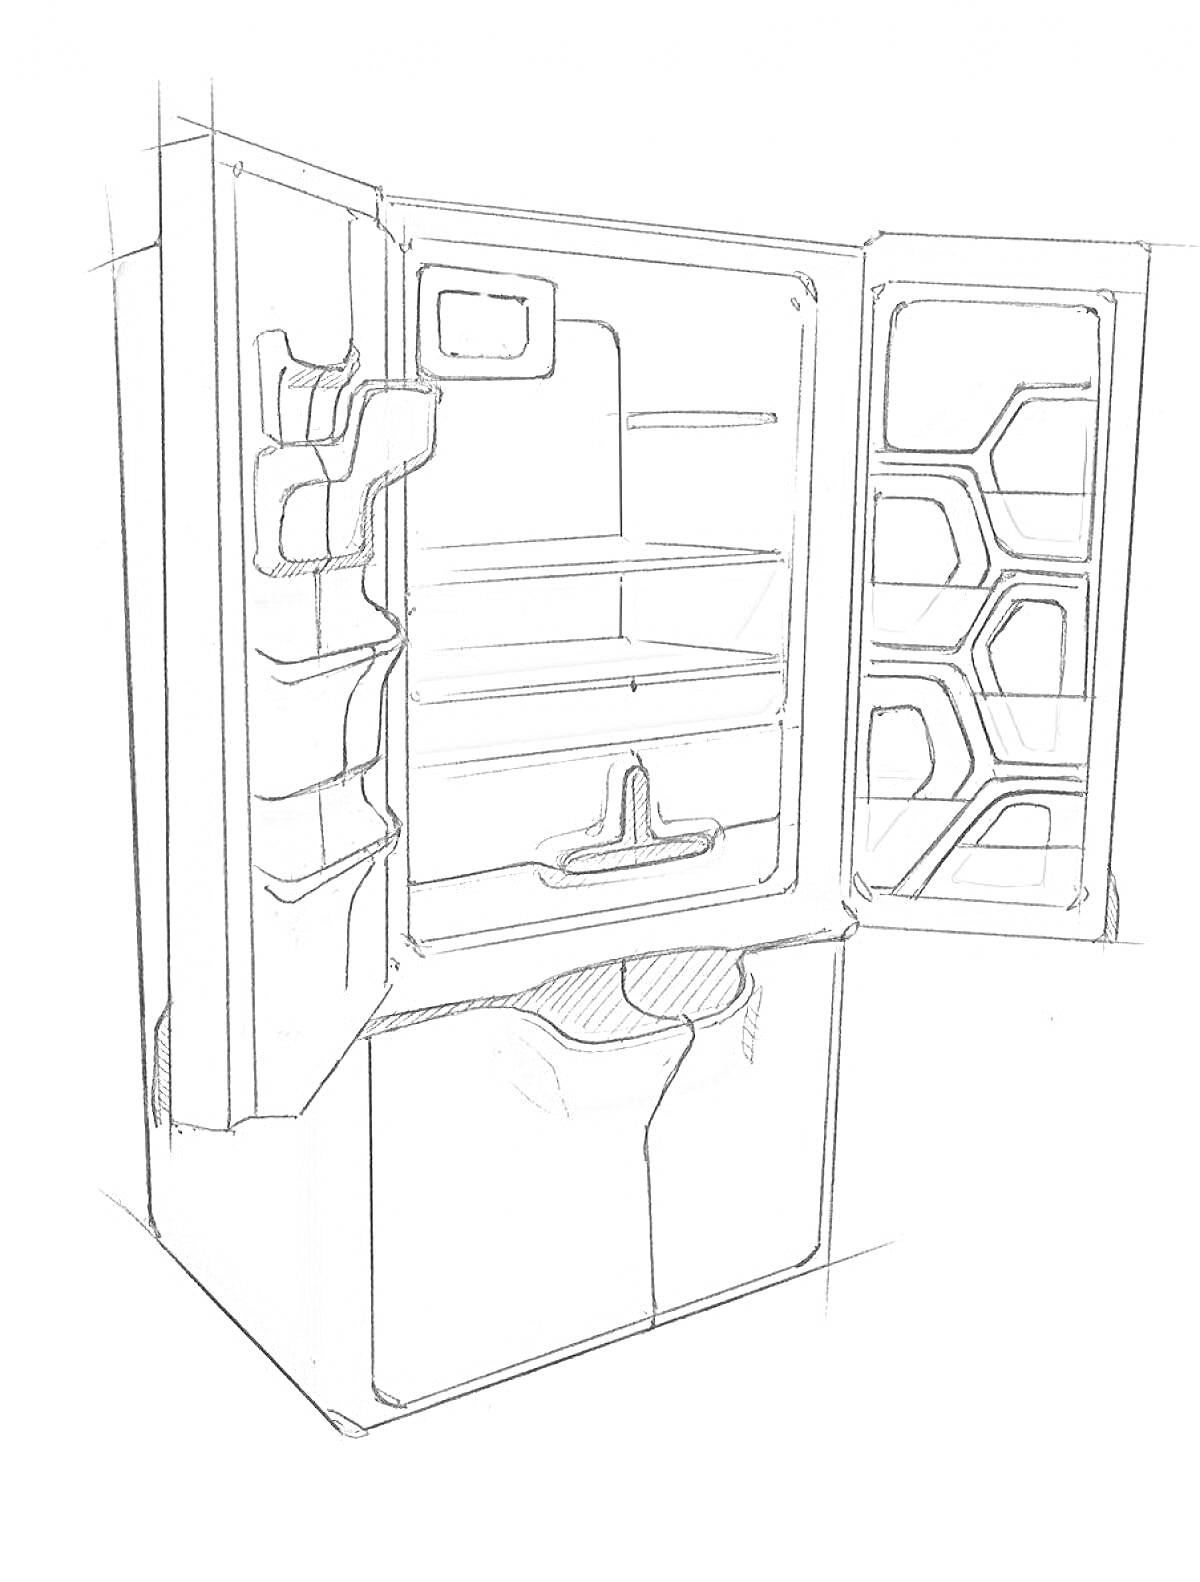 Раскраска Открытый холодильник с полками на дверце и разноуровневыми полками внутри